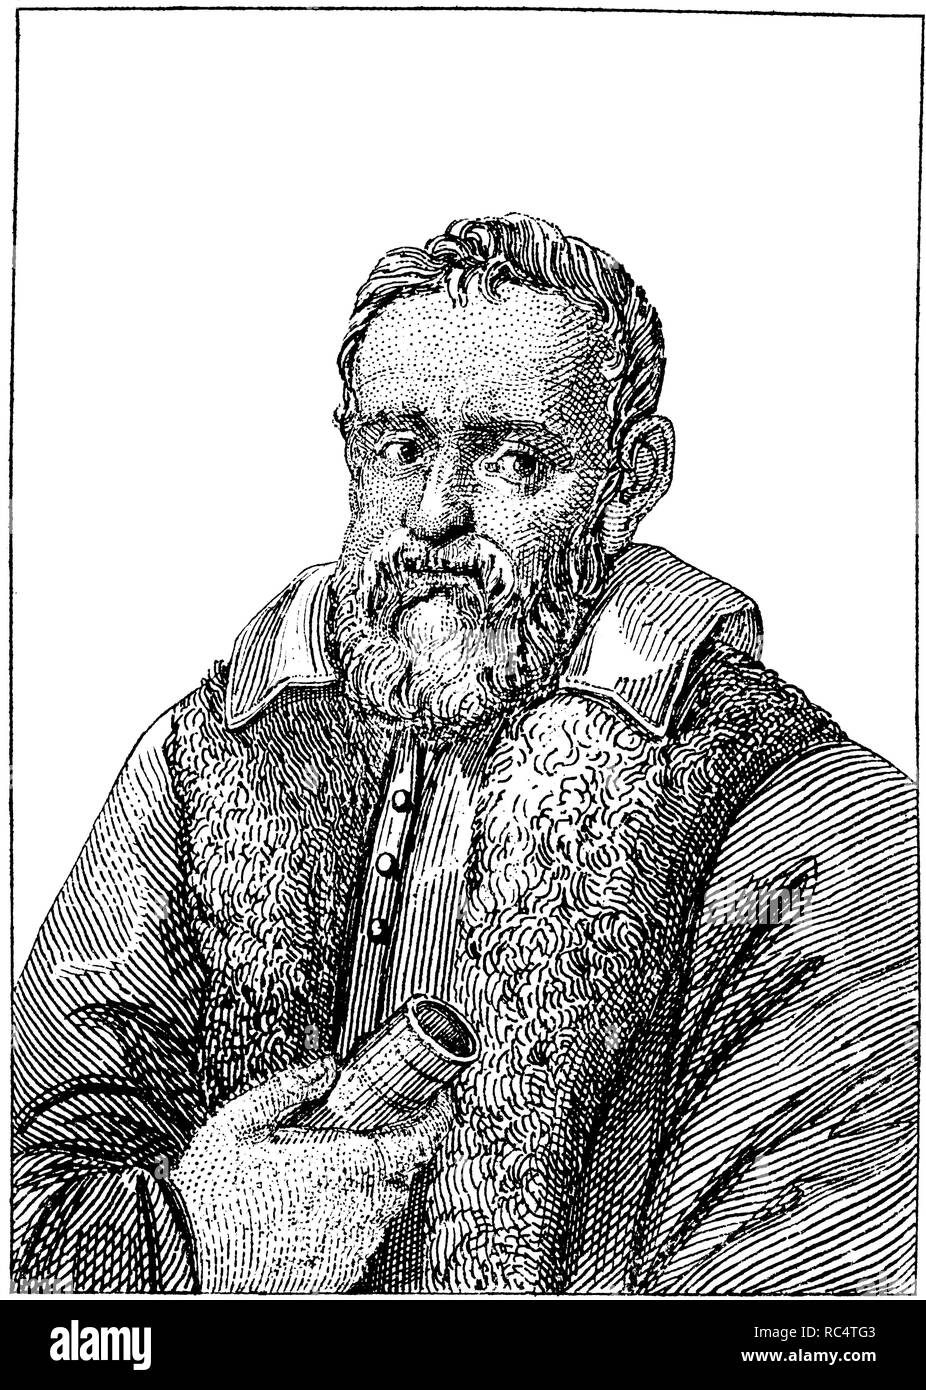 Galileo Galilei (15. Februar 1564 - vom 8. Januar 1642) war ein italienischer Universalgelehrten. Galileo ist eine zentrale Figur in der Übergang von der natürlichen Philosophie der modernen Wissenschaft und in der Transformation der wissenschaftlichen Renaissance in eine wissenschaftliche Revolution. Gravur, 1840. Stockfoto